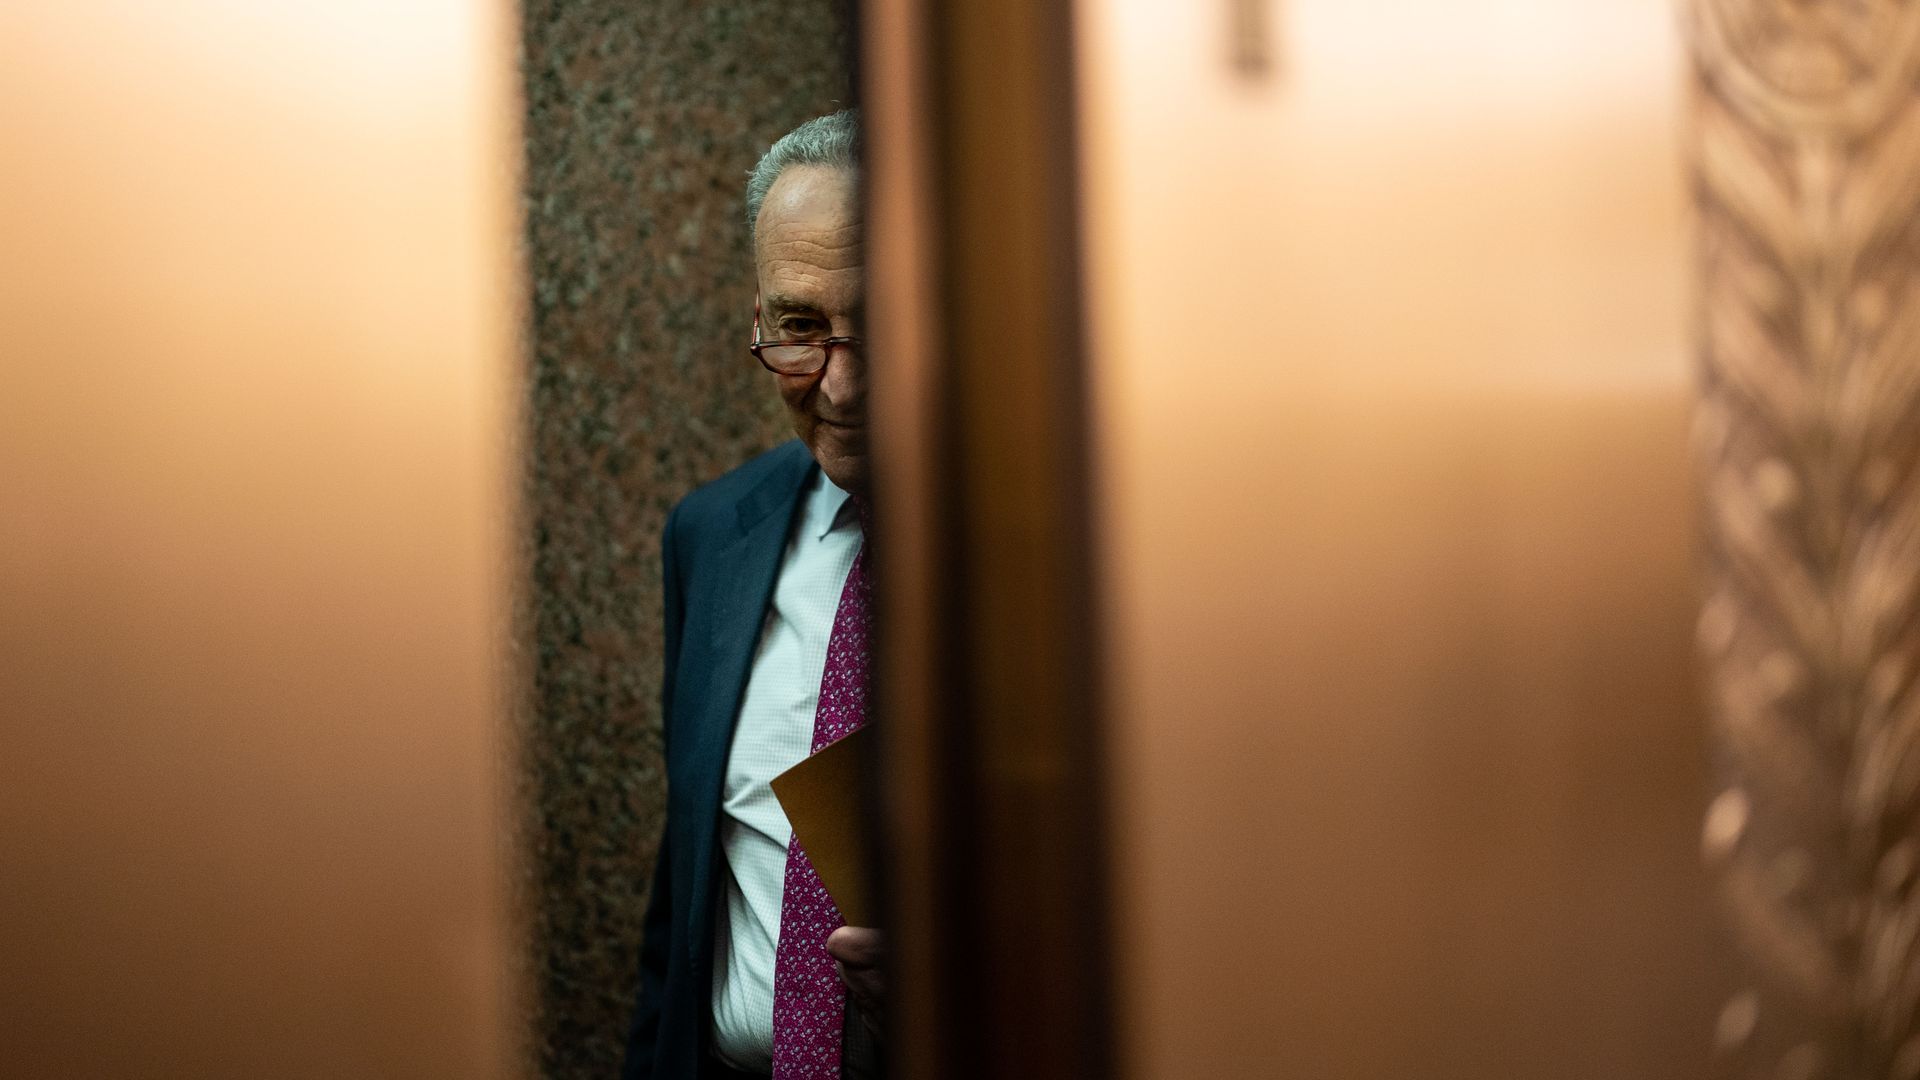 Senate Majority Leader Chuck Schumer is seen between closing elevator doors.